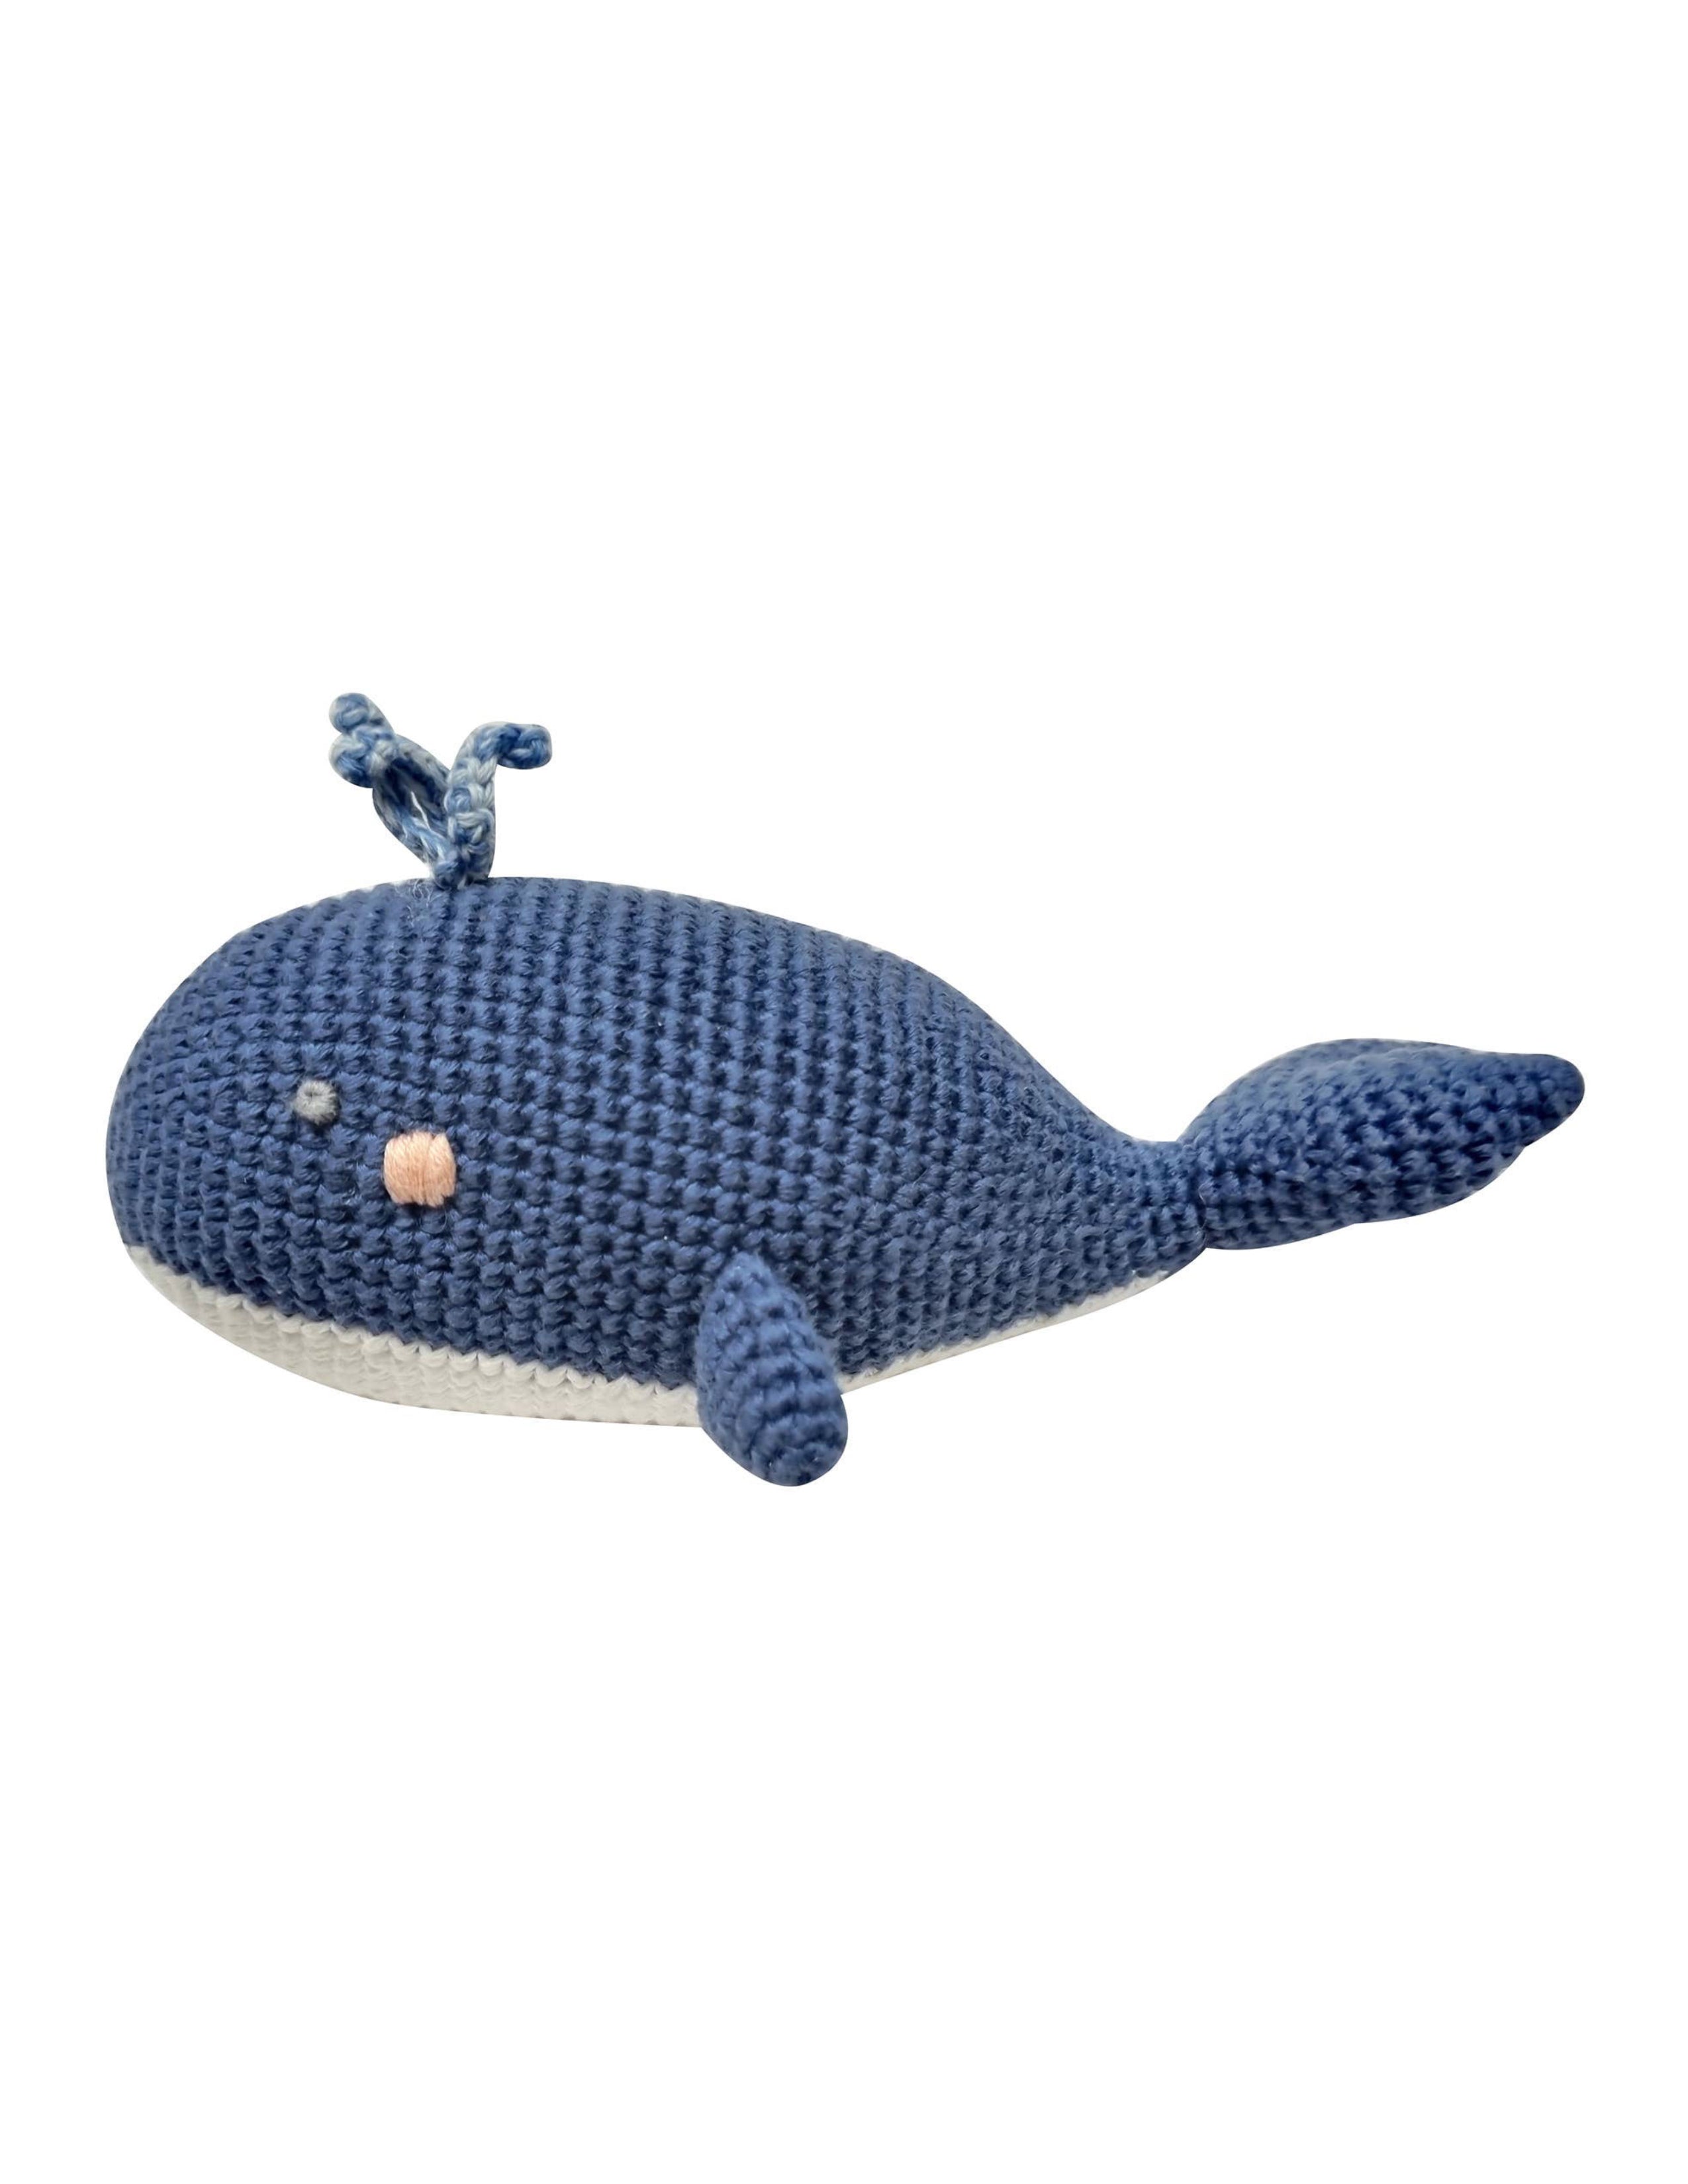 Crochet Wilbert Whale Rattle Toy